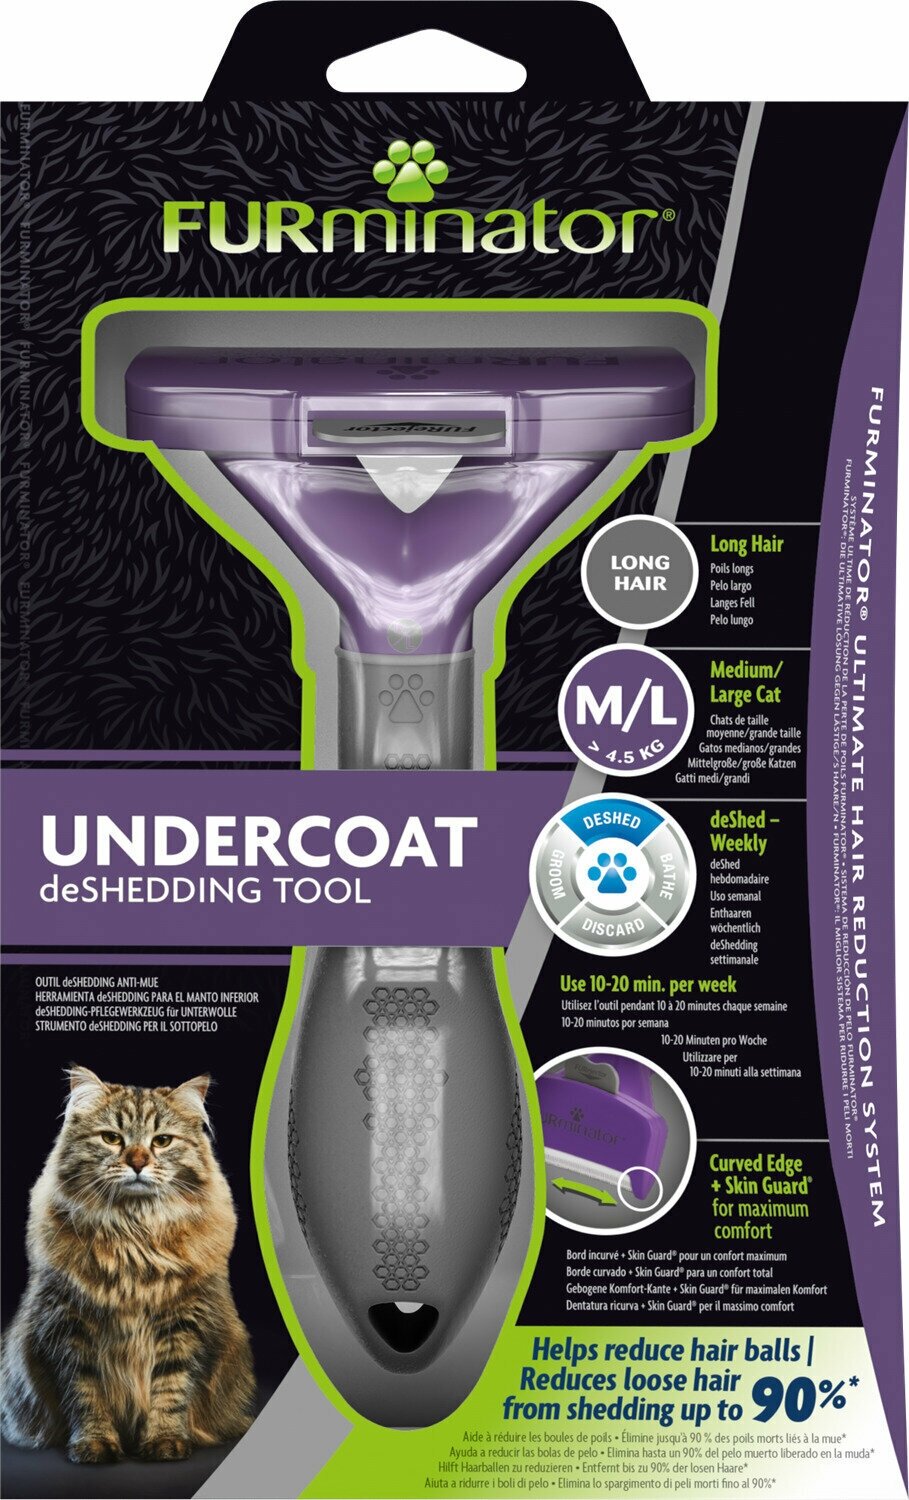 Инструмент FURminator M/L для больших кошек более 4,5 кг c длинной шерстью